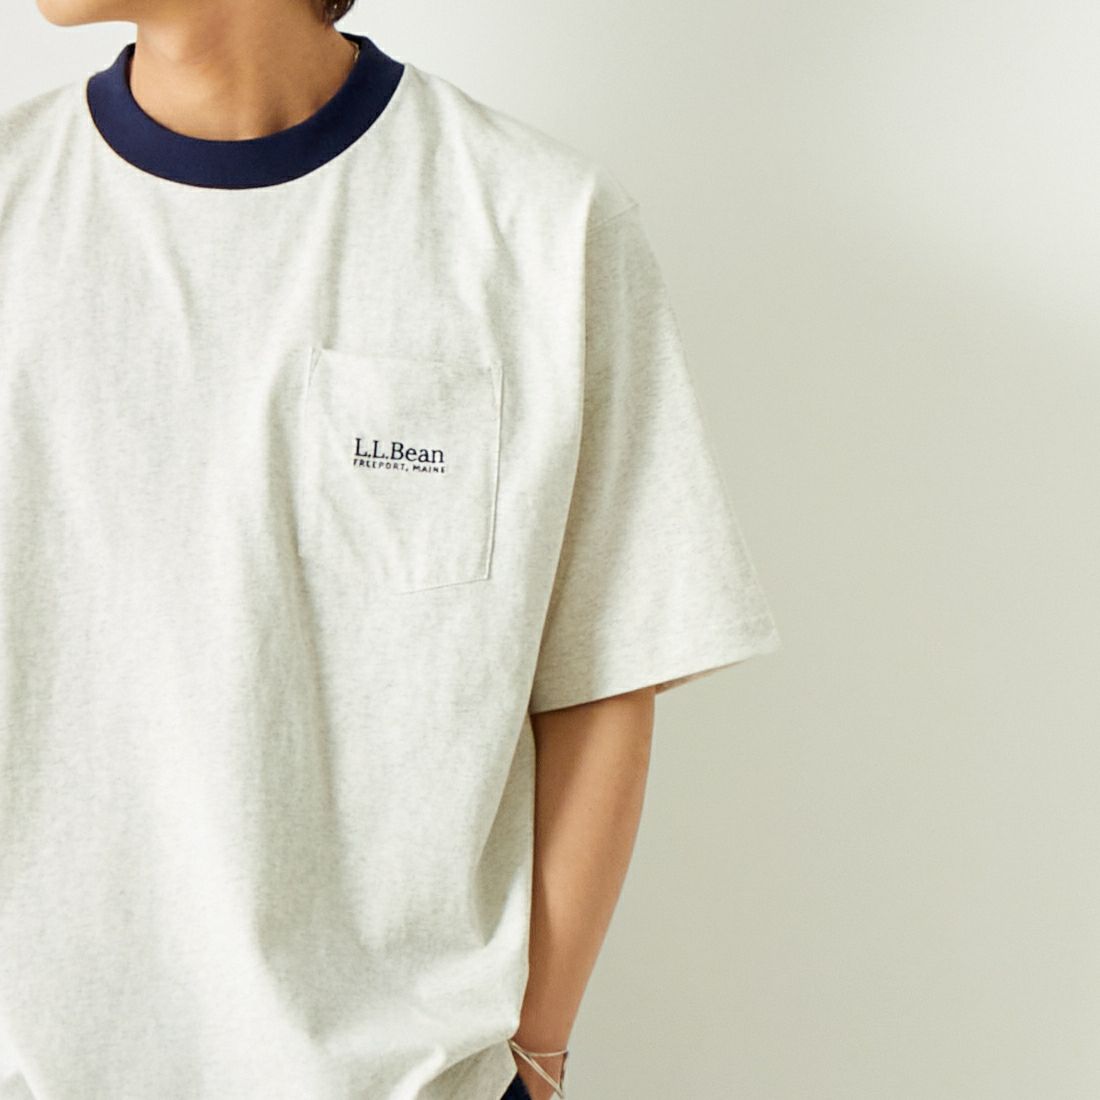 L.L.BEAN [エルエルビーン] リンガーポケットTシャツ [4275-6065] 90 BIRCH/N